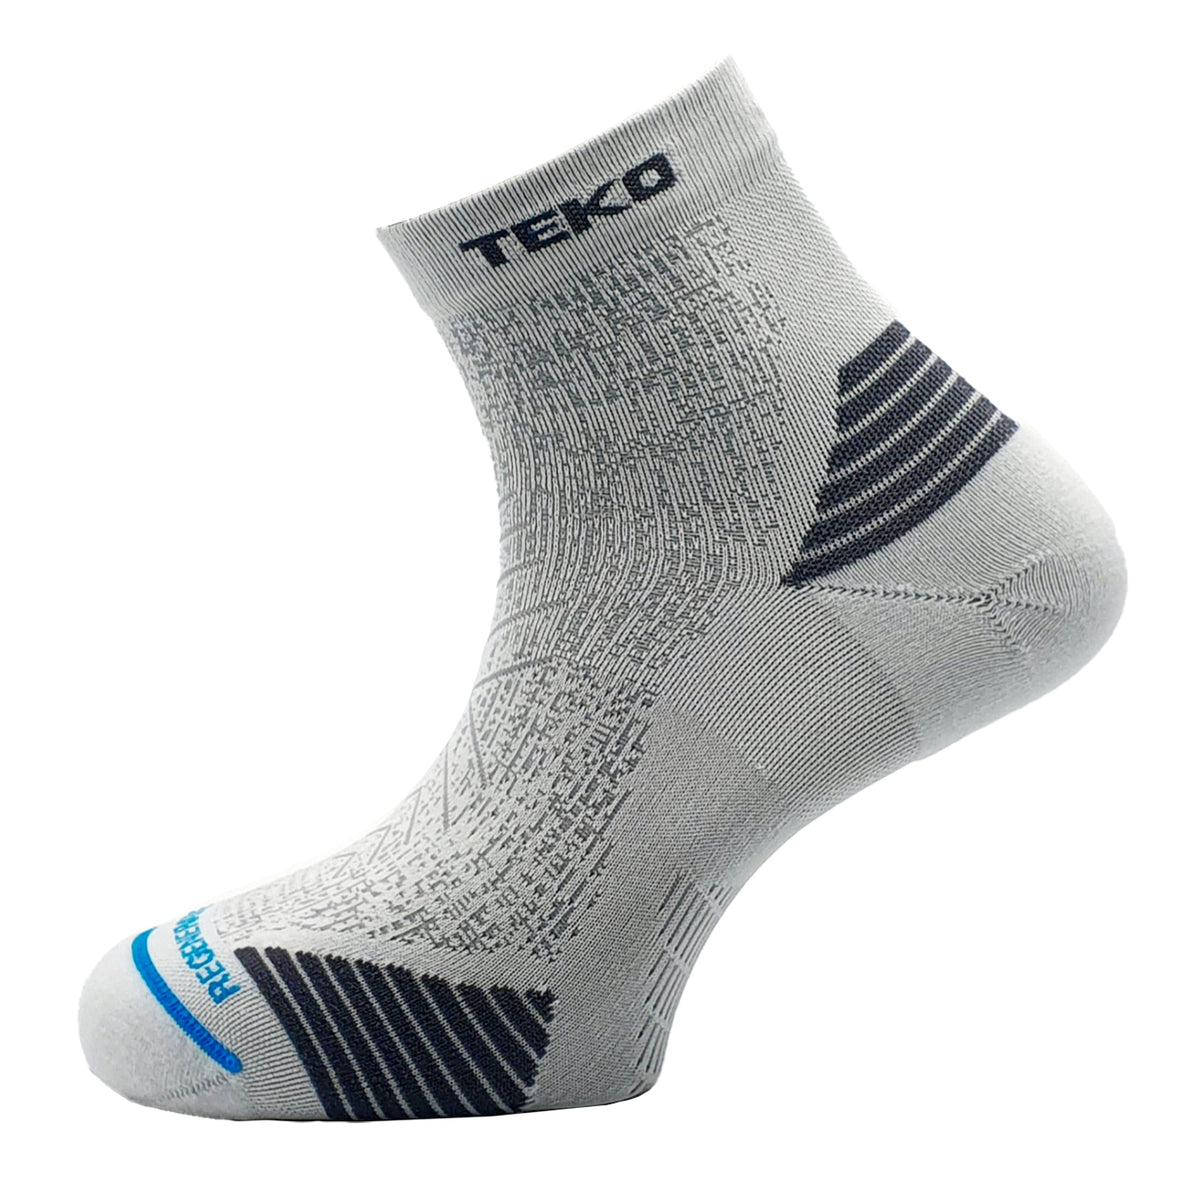 TEKO eco RUN 2.0 MINI CREW Light Half Cushion Running Socks